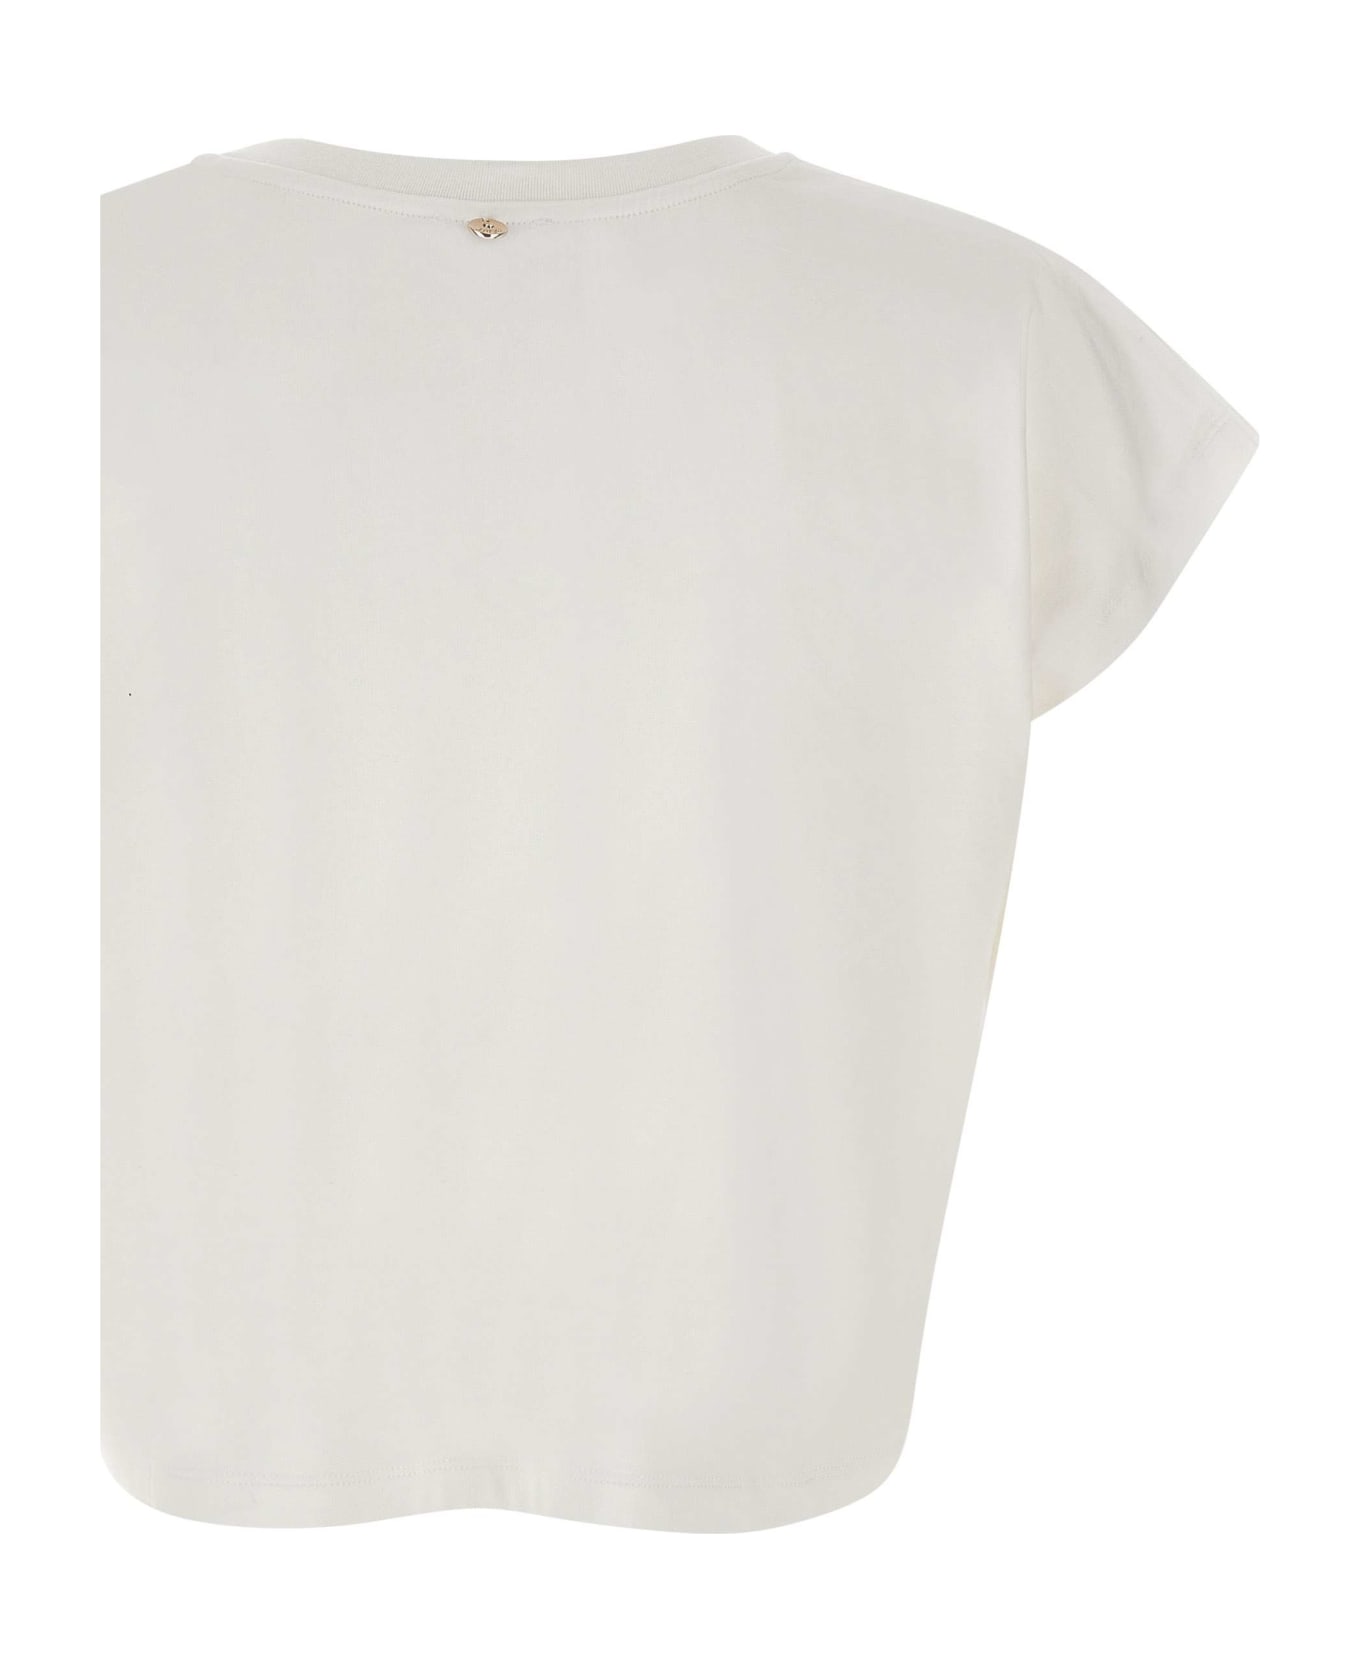 Liu-Jo 'moda' Cotton T-shirt - Bianco Chain